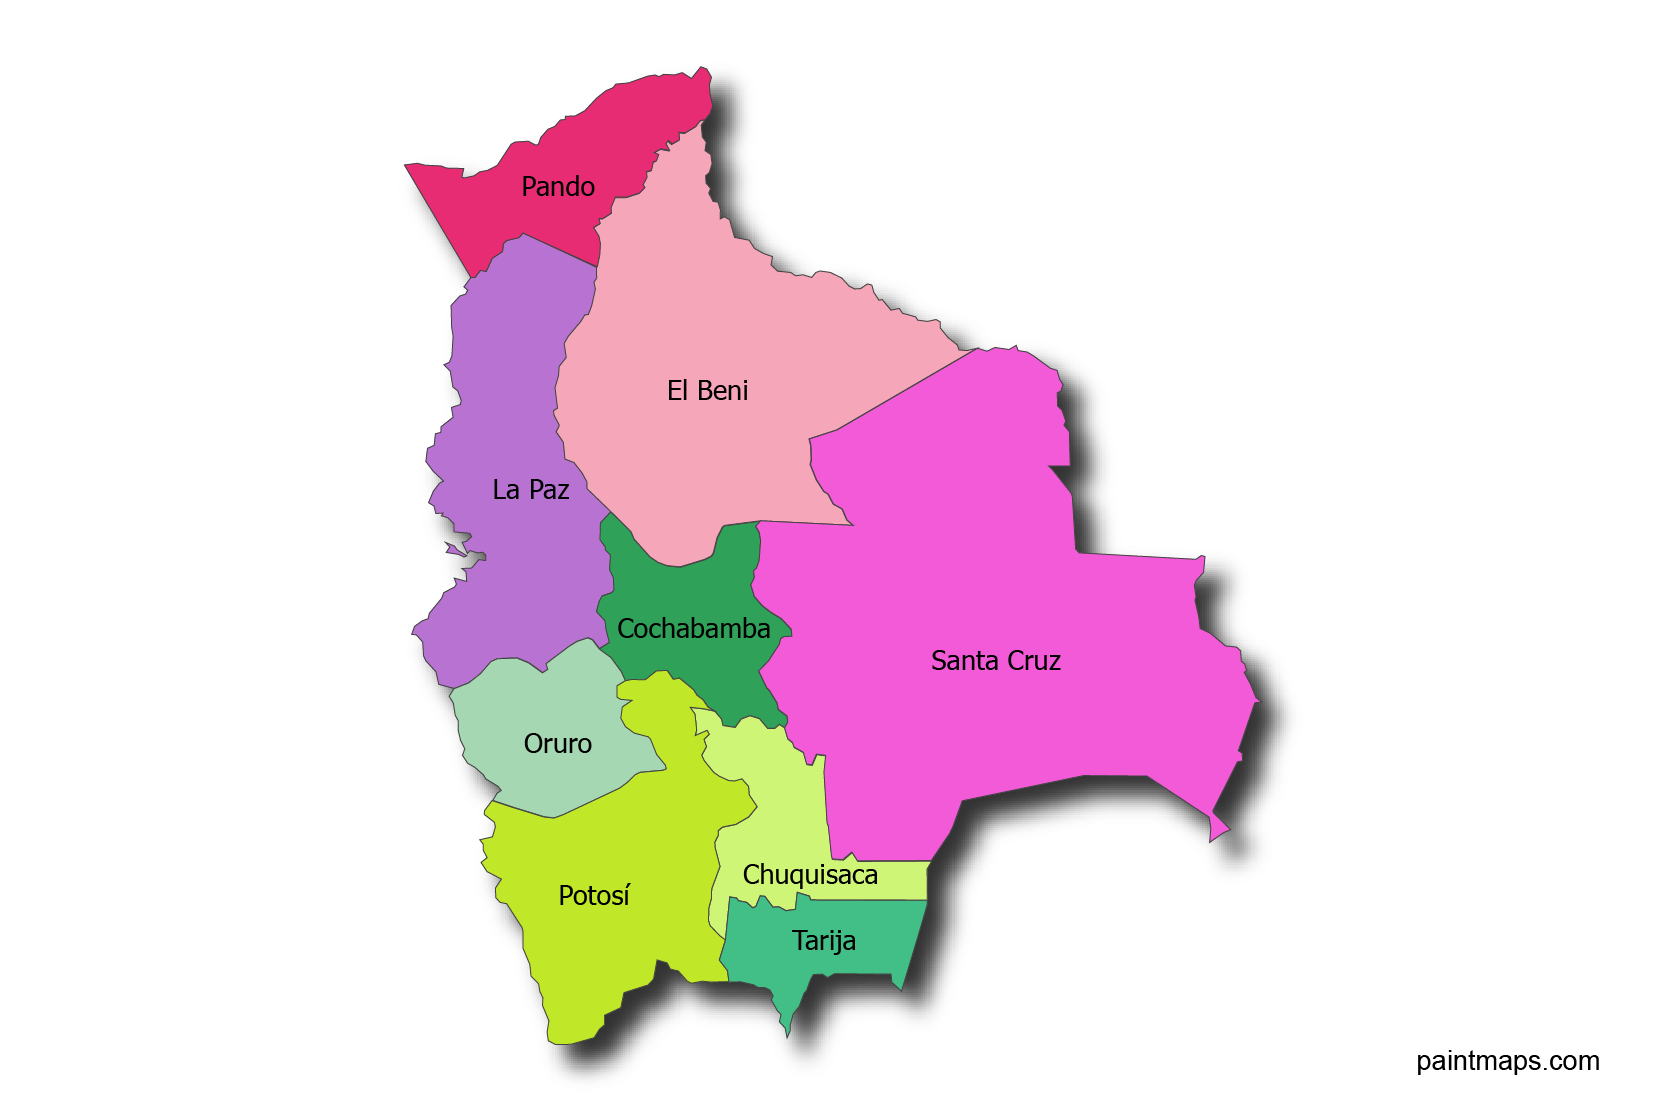 Gratis Descargable Mapa Vectorial De Bolivia Eps Svg Pdf Png Adobe ...